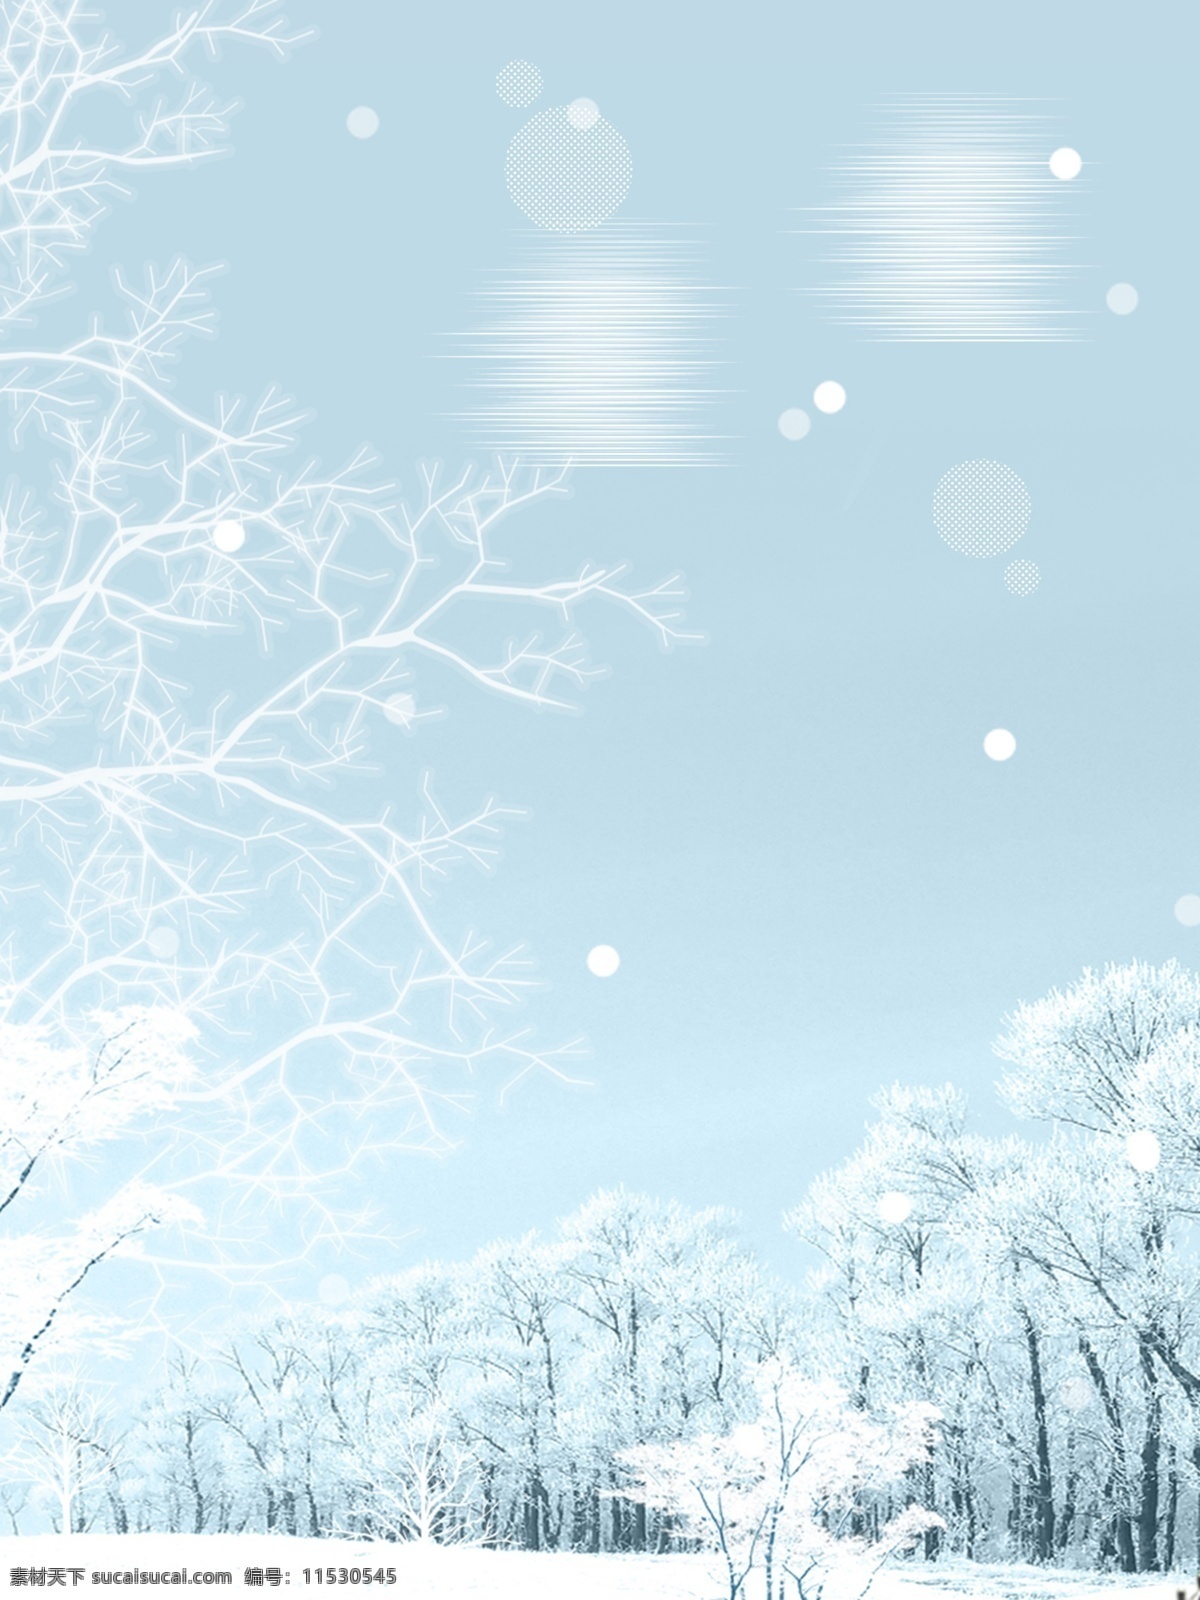 唯美 冬月 雪地 树林 背景 冬季 背景素材 冬天快乐 冬天早晨 广告背景素材 冬天雪景